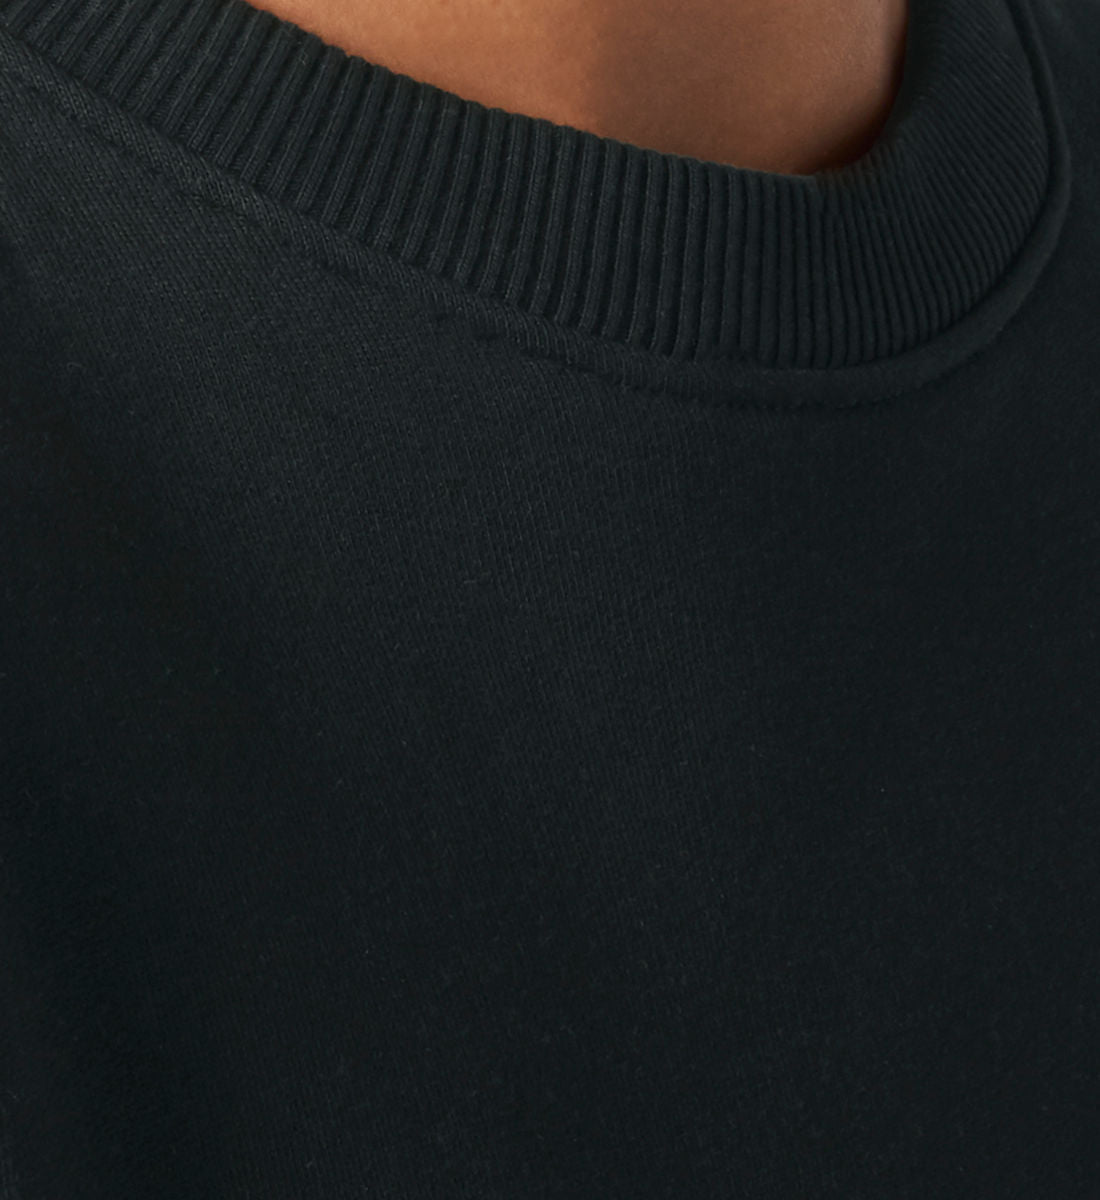 Schwarzes Sweatshirt Unisex für Frauen und Männer bedruckt mit dem Design der Roger Rockawoo Kollektion HipHop check your brain